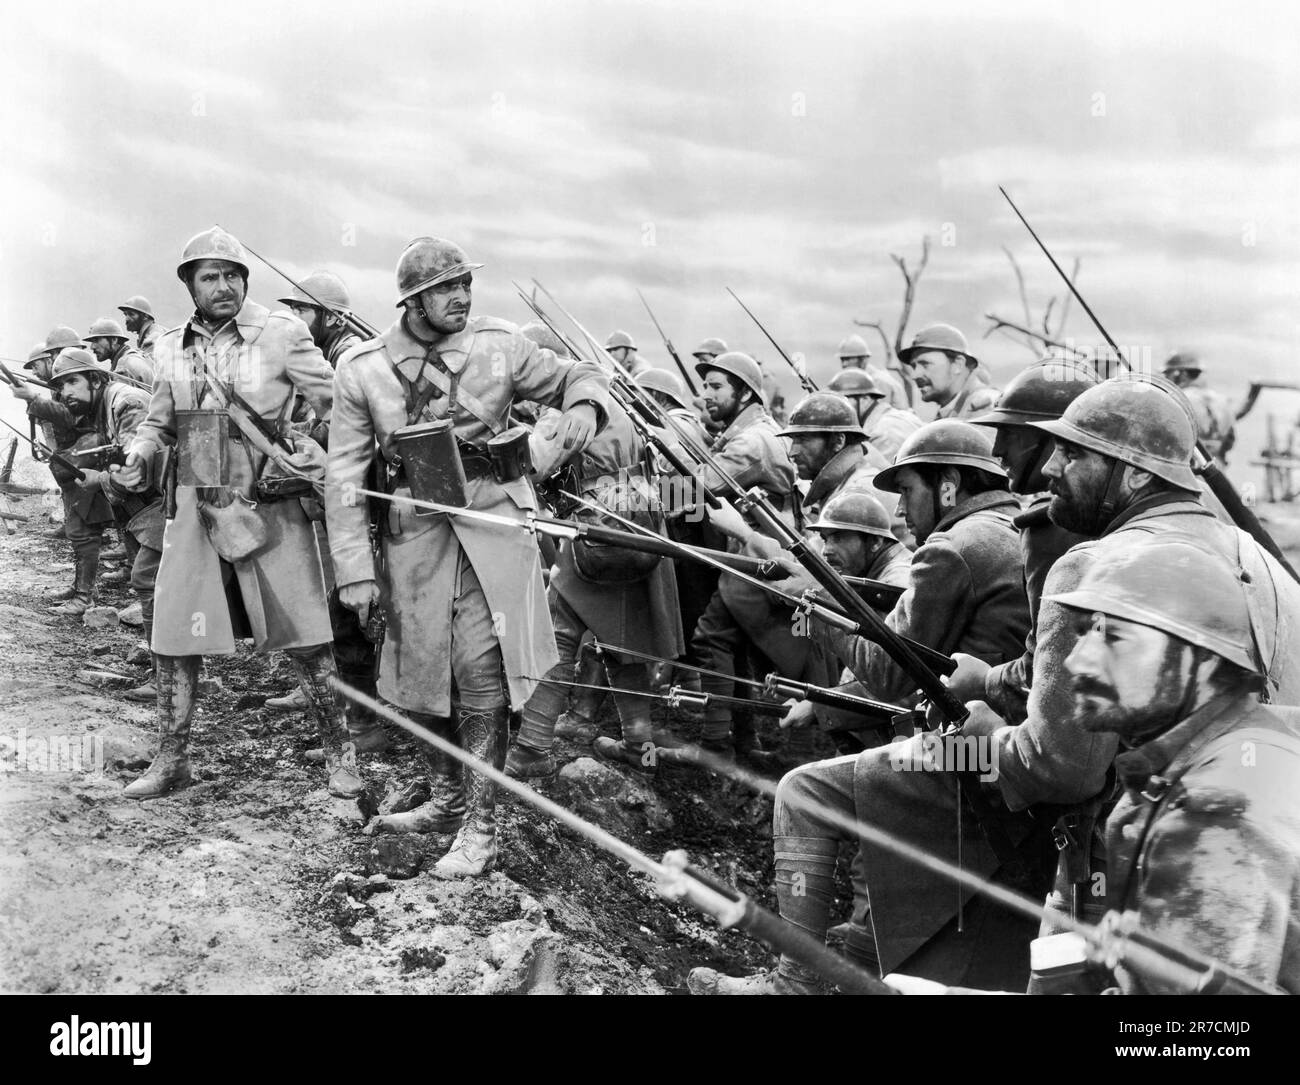 Hollywood, Californie, 1925. Une scène d'un film de la première Guerre mondiale avec les troupes prêtes à attaquer avec les bayonets. Banque D'Images